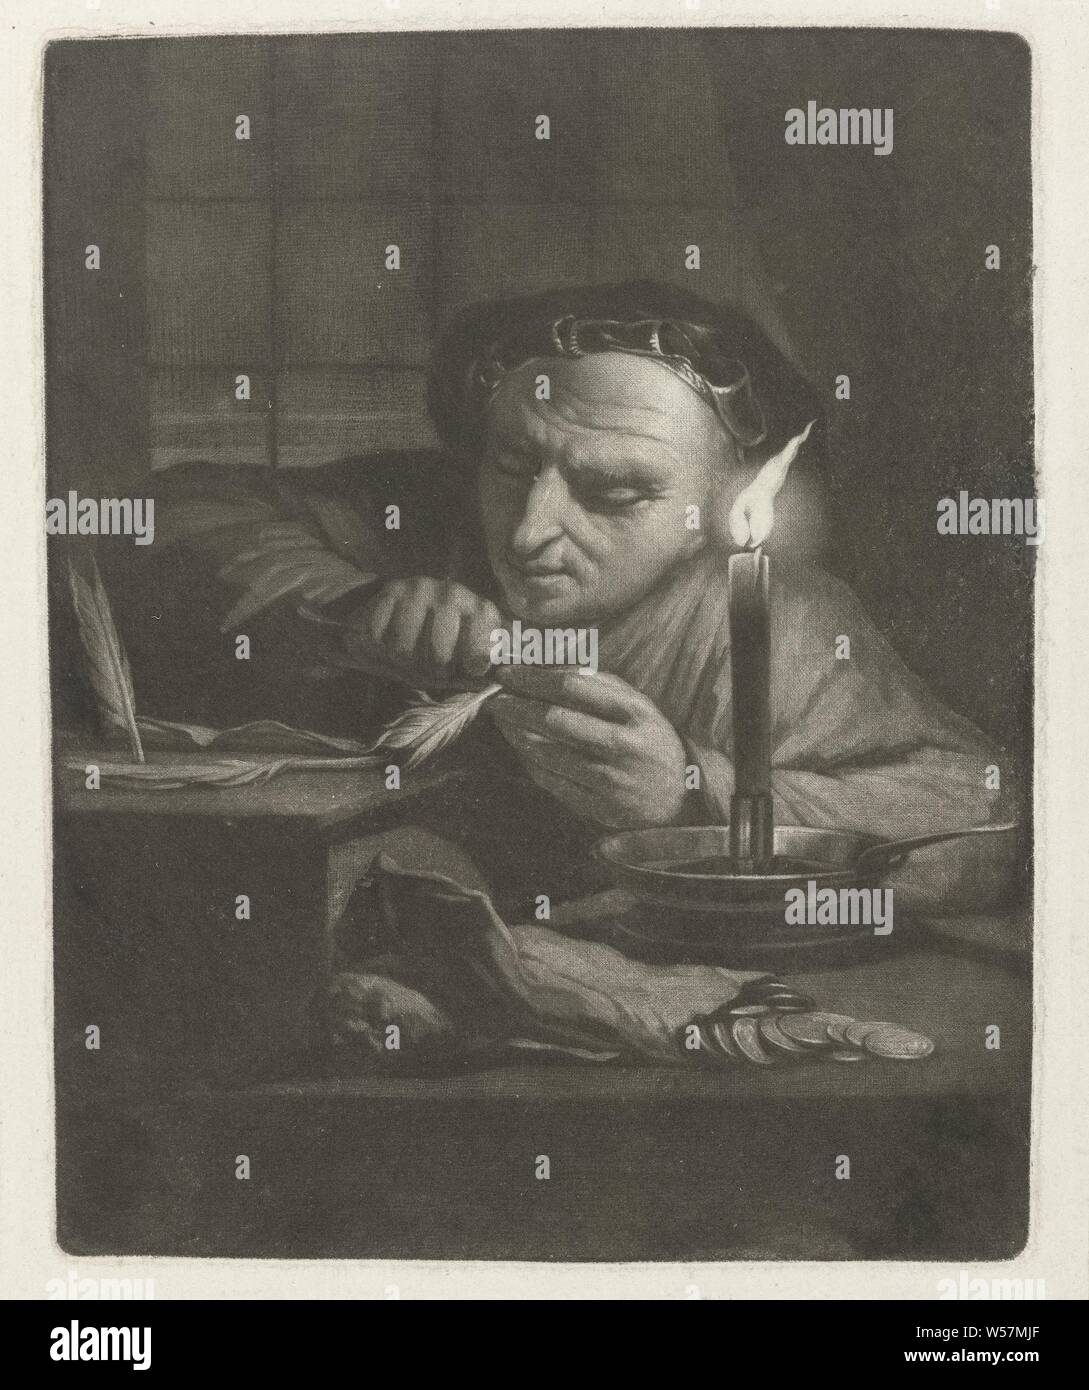 Le stylo cutter, un homme coupe un stylo à la bougie sur sa table, sur laquelle sont deux sacs d'argent et un morceau de papier. Il porte une robe de chambre et d'un béret., Nicolaas Verkolje, Delft, 1683 - 1746, papier, h 154 mm × W 122 mm Banque D'Images